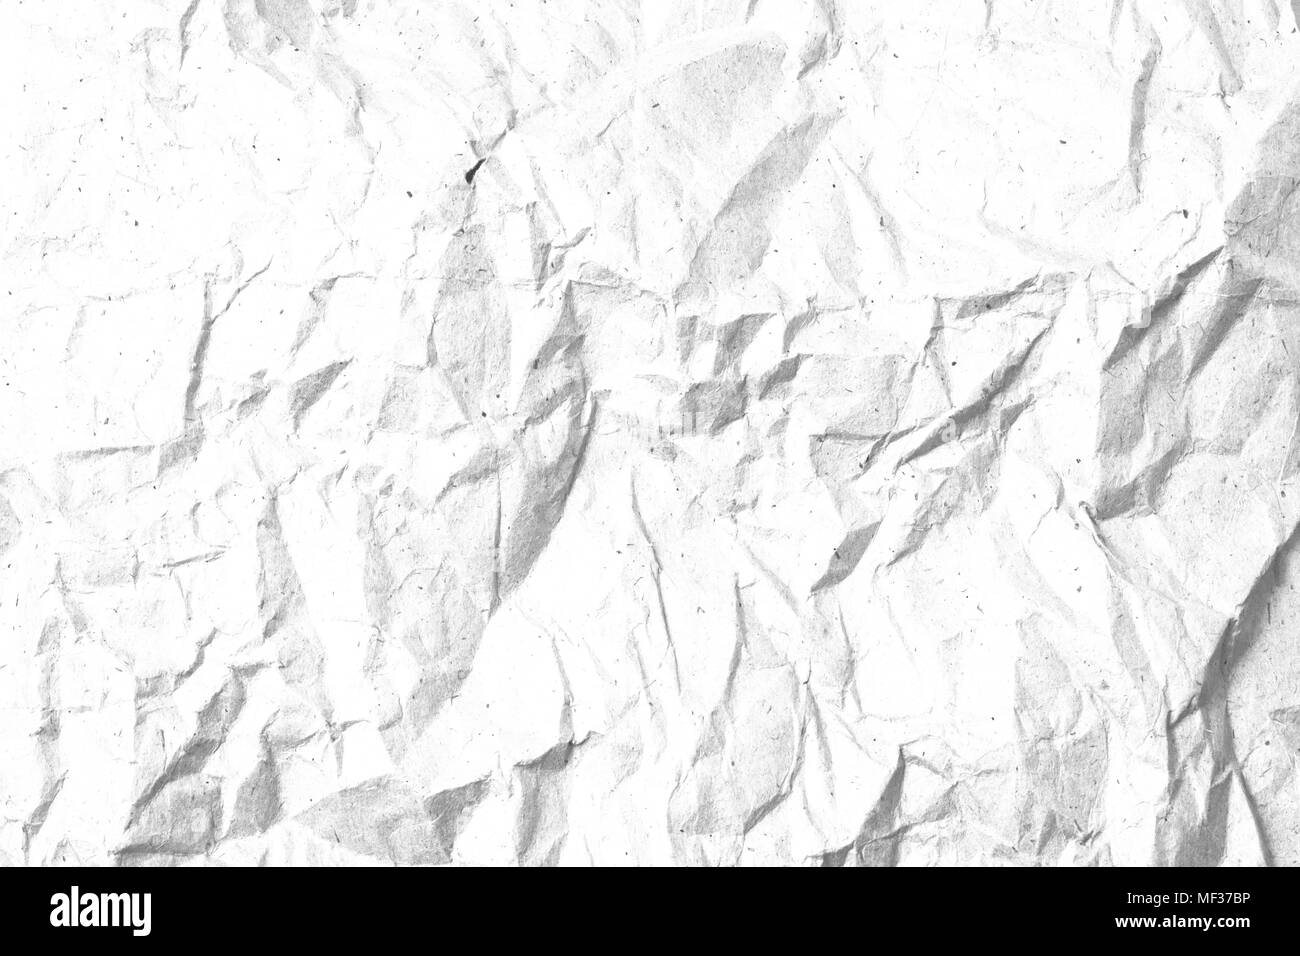 Dot et le grain du papier chiffonné texture background. Modèle noir et blanc pour le fond de page artwork. Banque D'Images